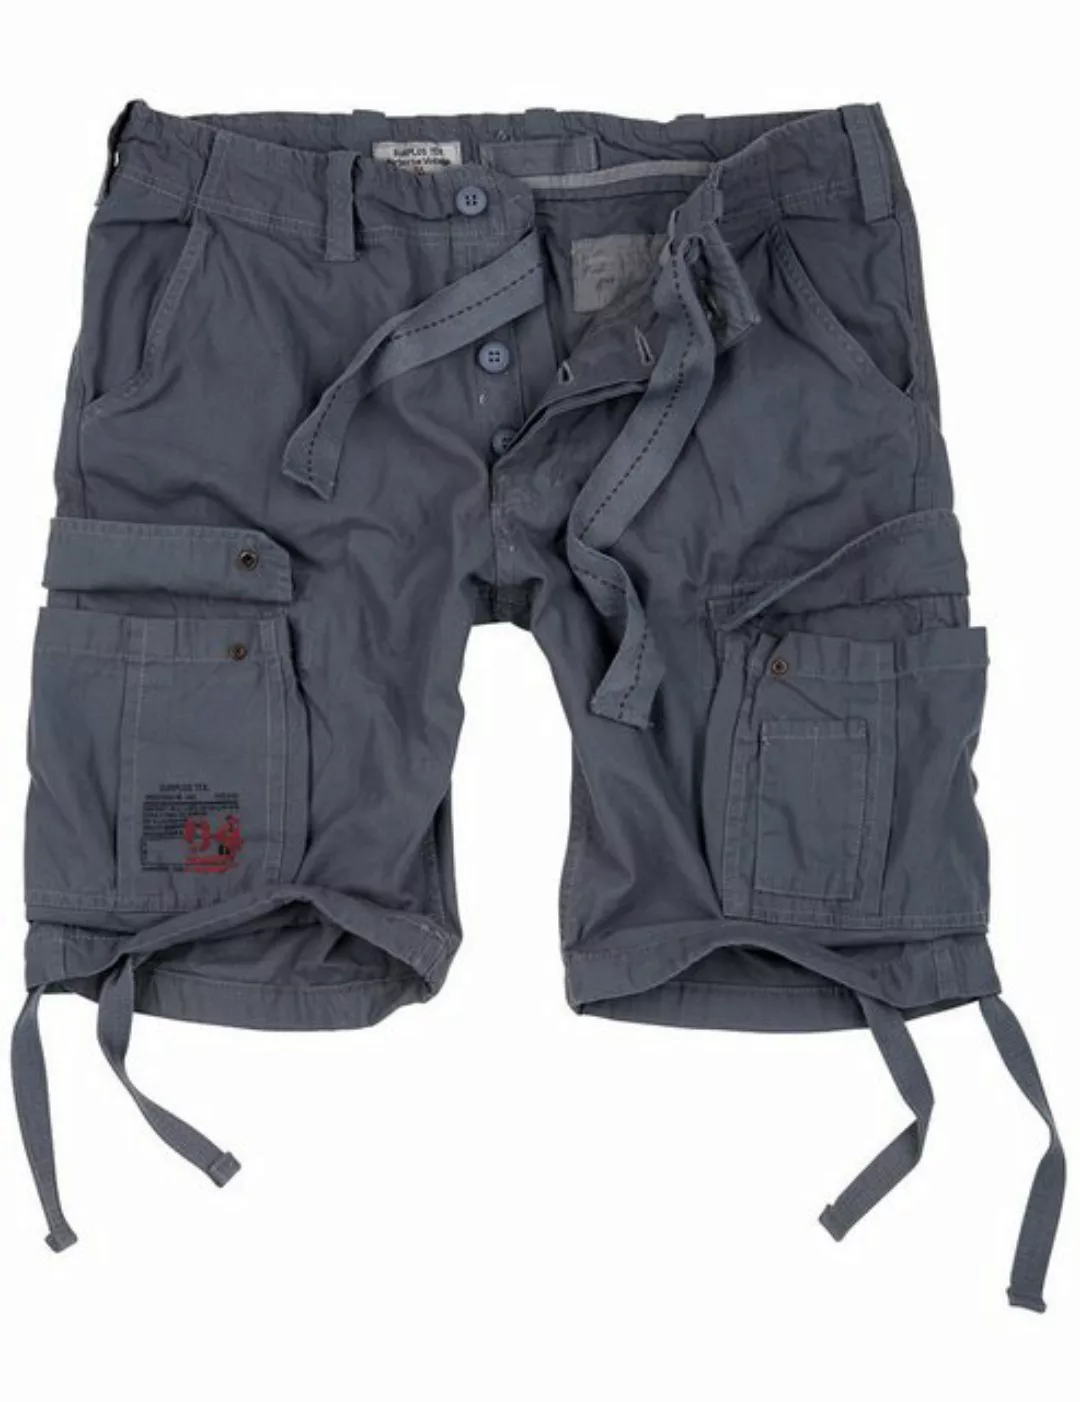 SURPLUS Cargoshorts SURPLUS Airborne Vintage Shorts, grau Cargostyle günstig online kaufen